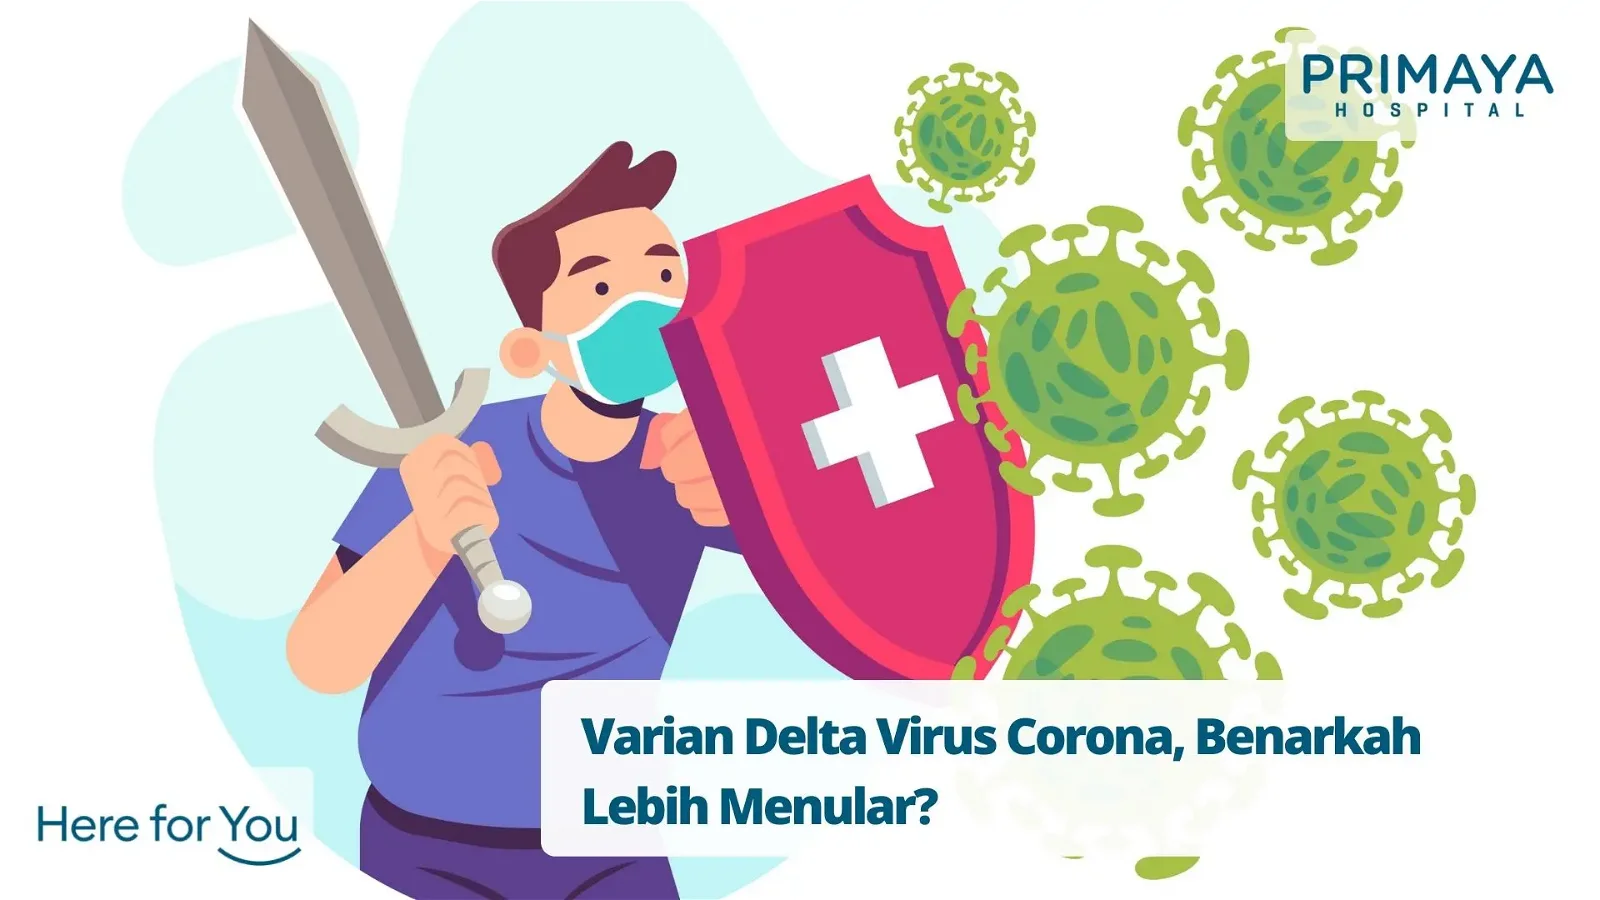 Varian Delta Virus Corona, Benarkah Lebih Menular